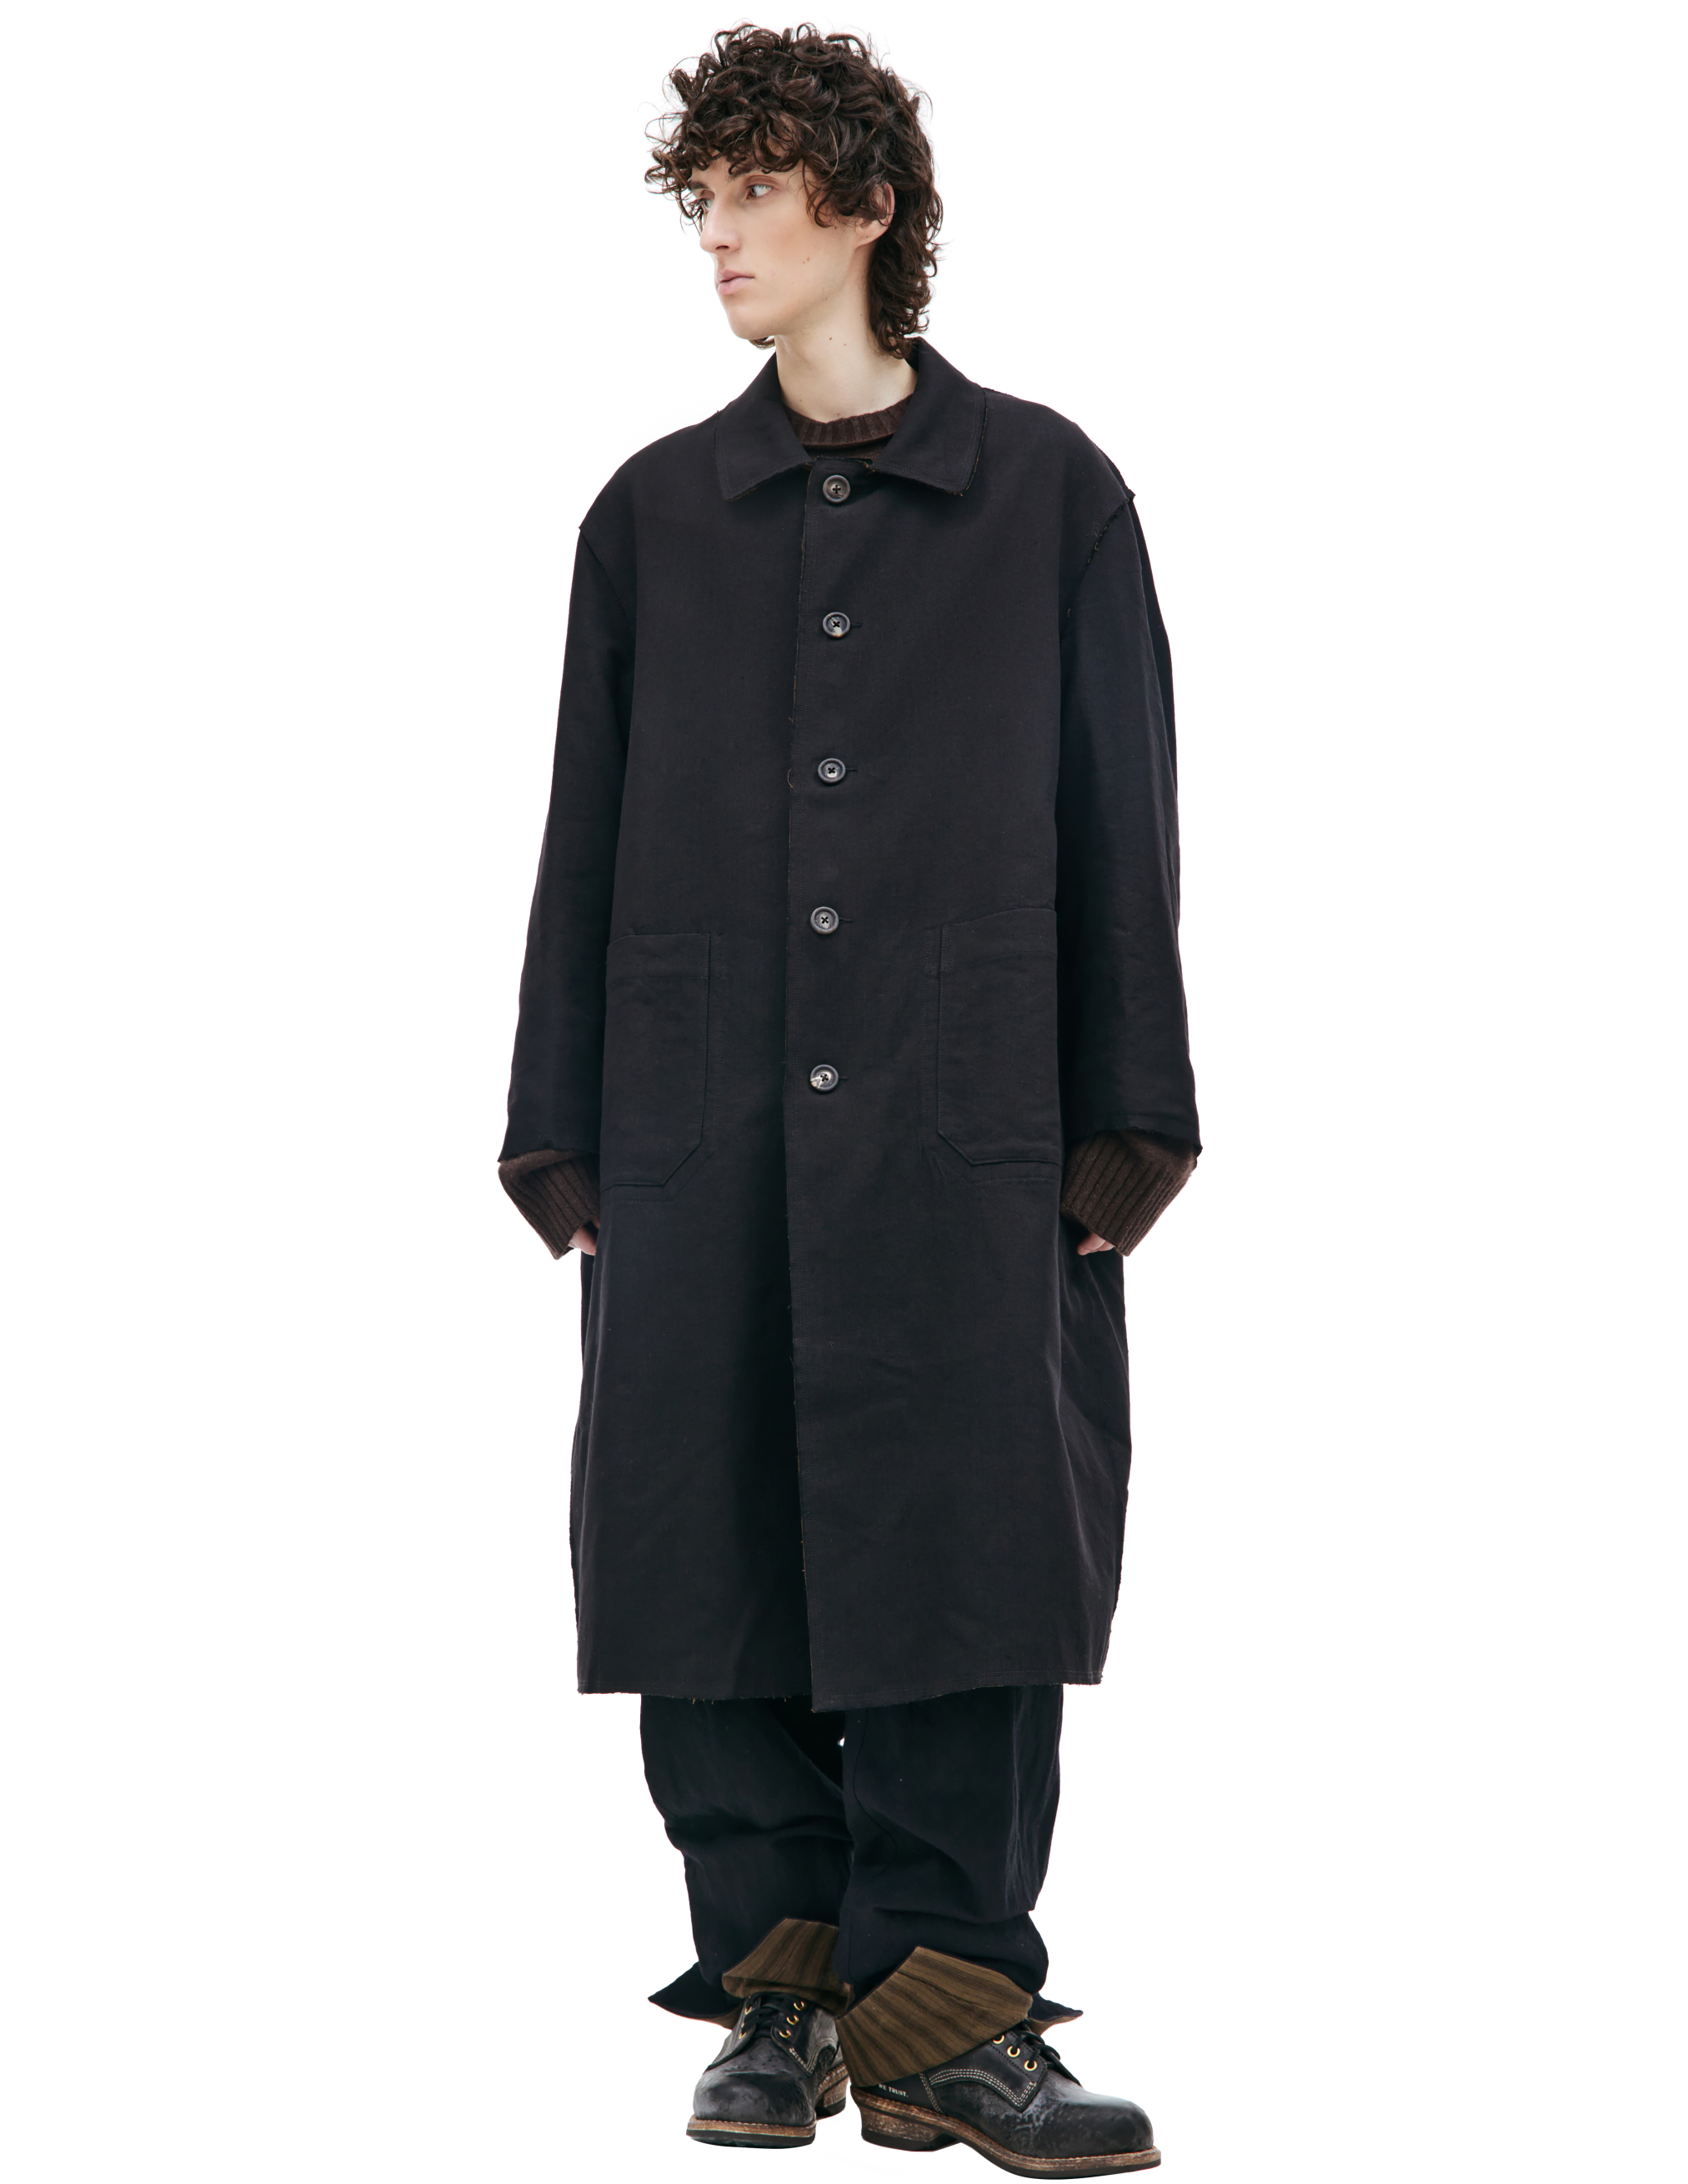 Двустороннее пальто изо льна и шерсти Ziggy Chen 0M2331112, размер 48;50